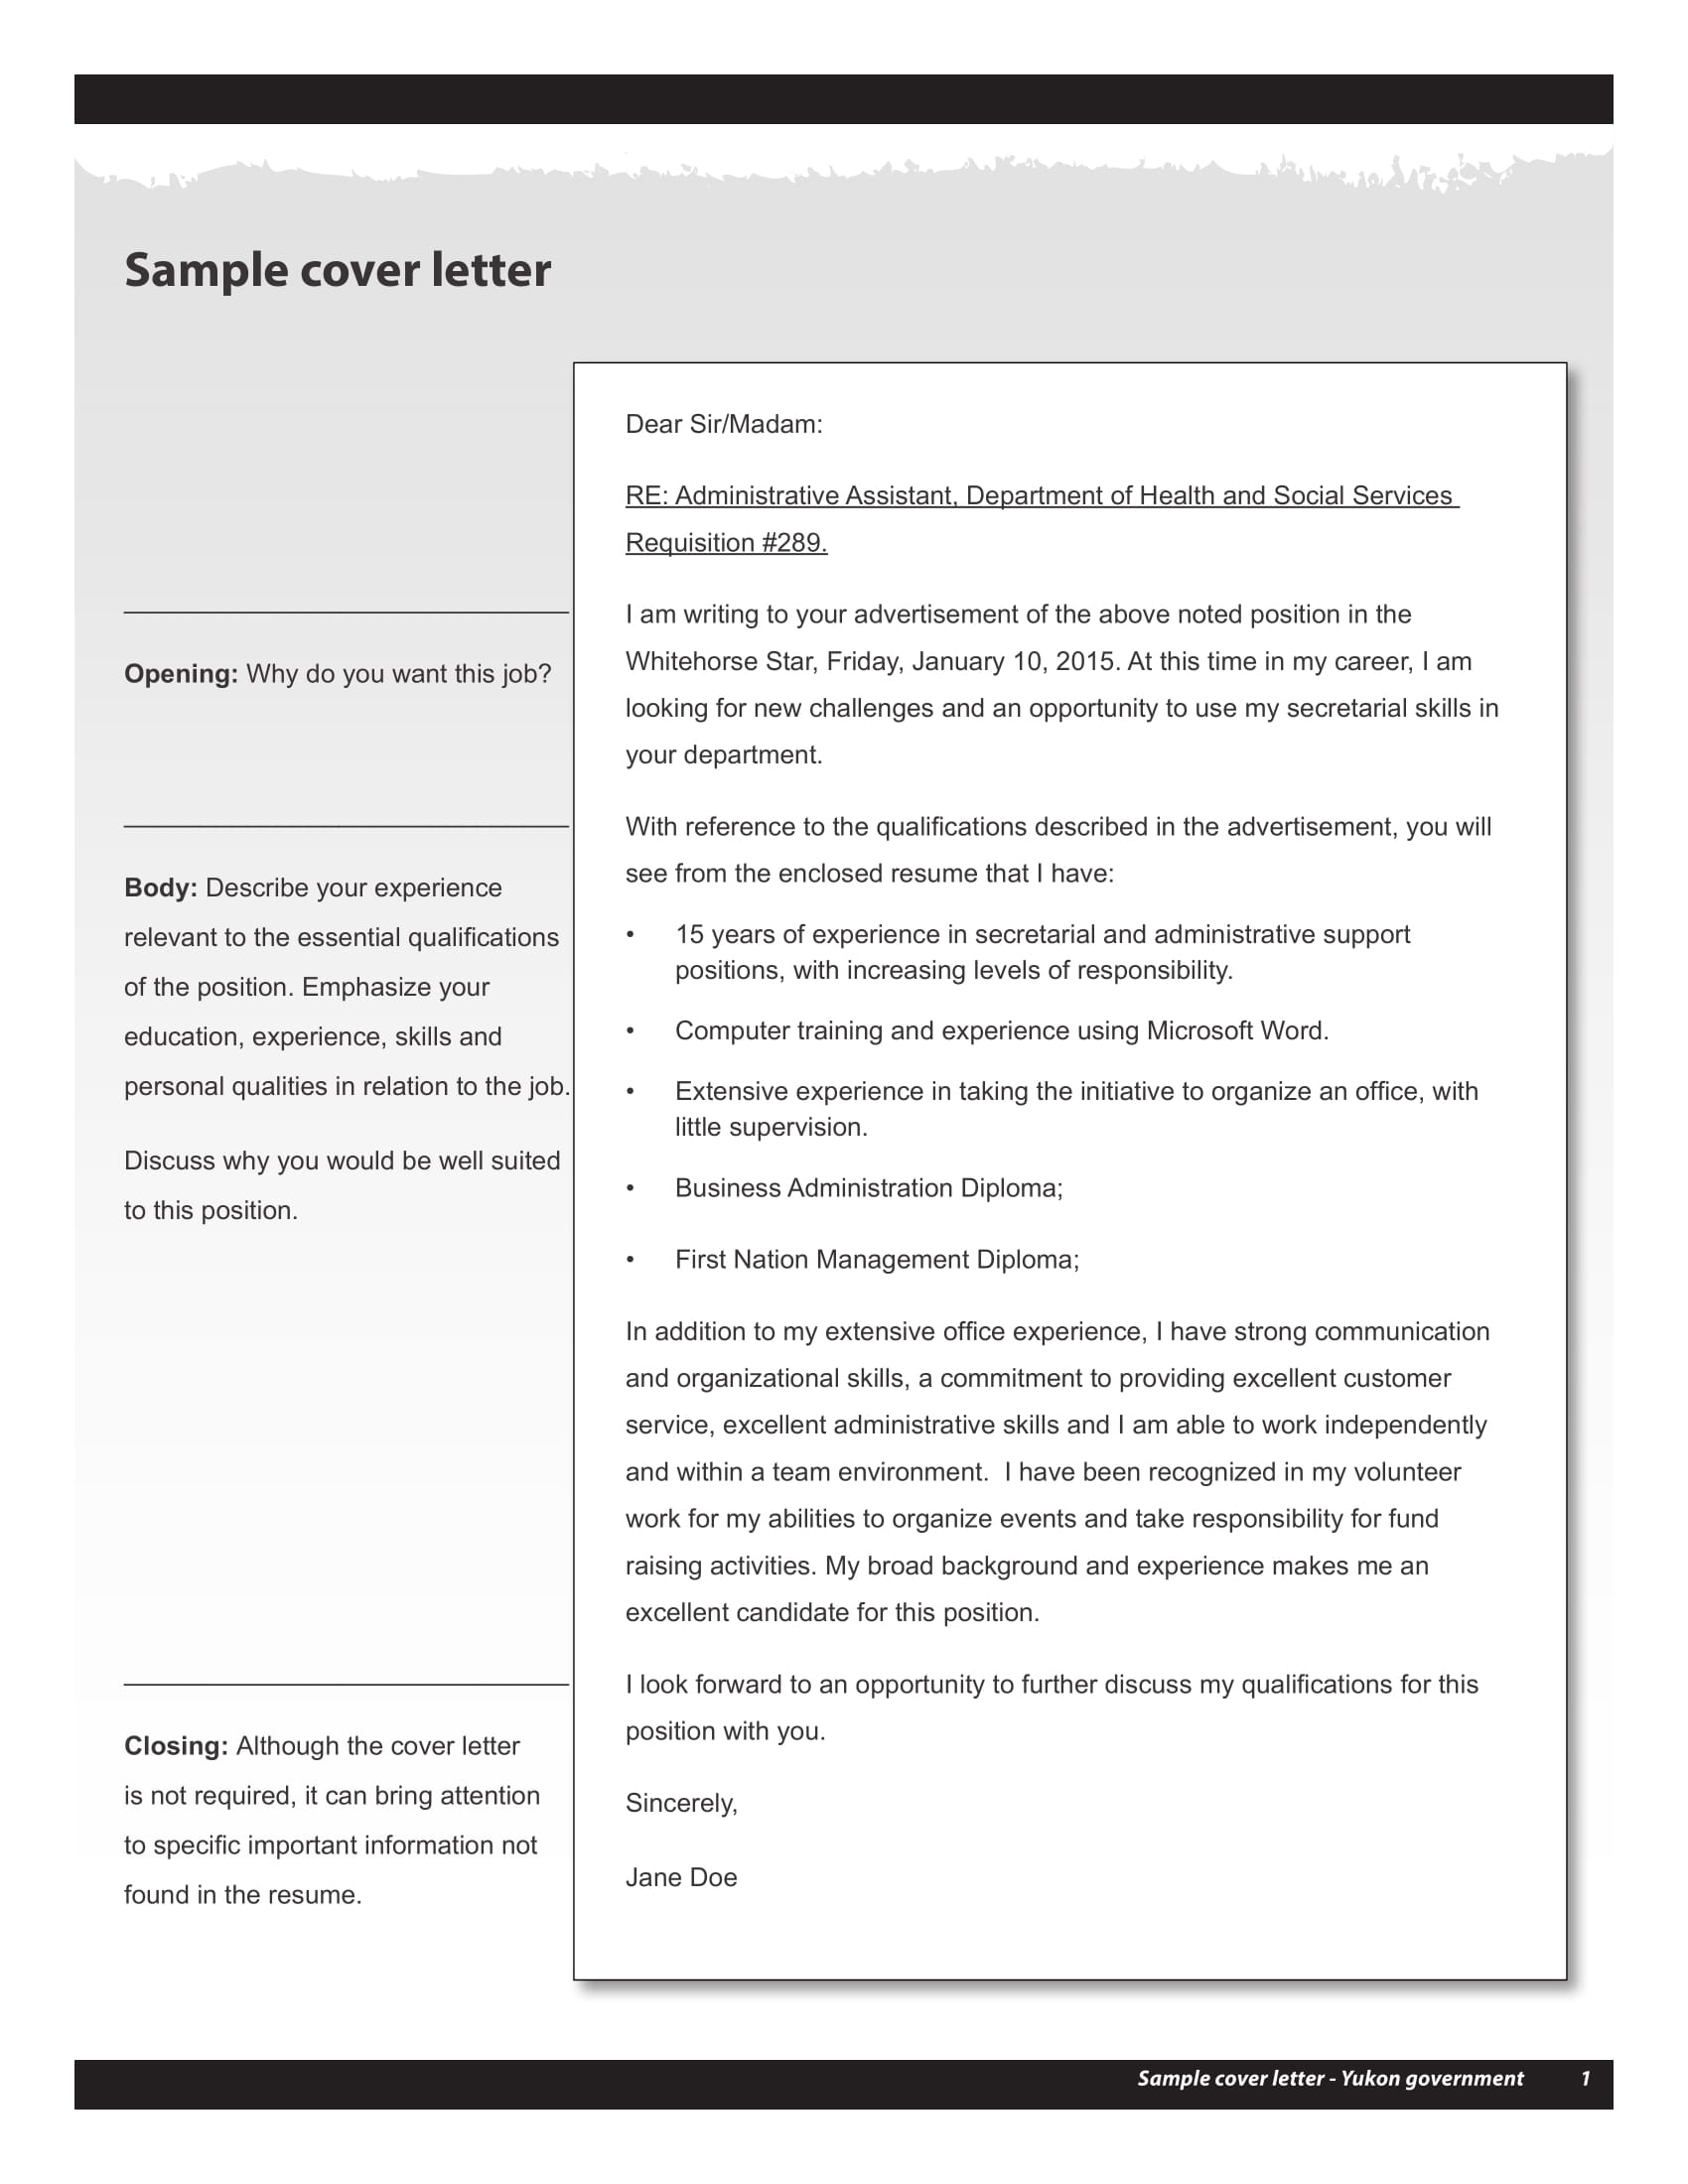 sample resume cover letter 1